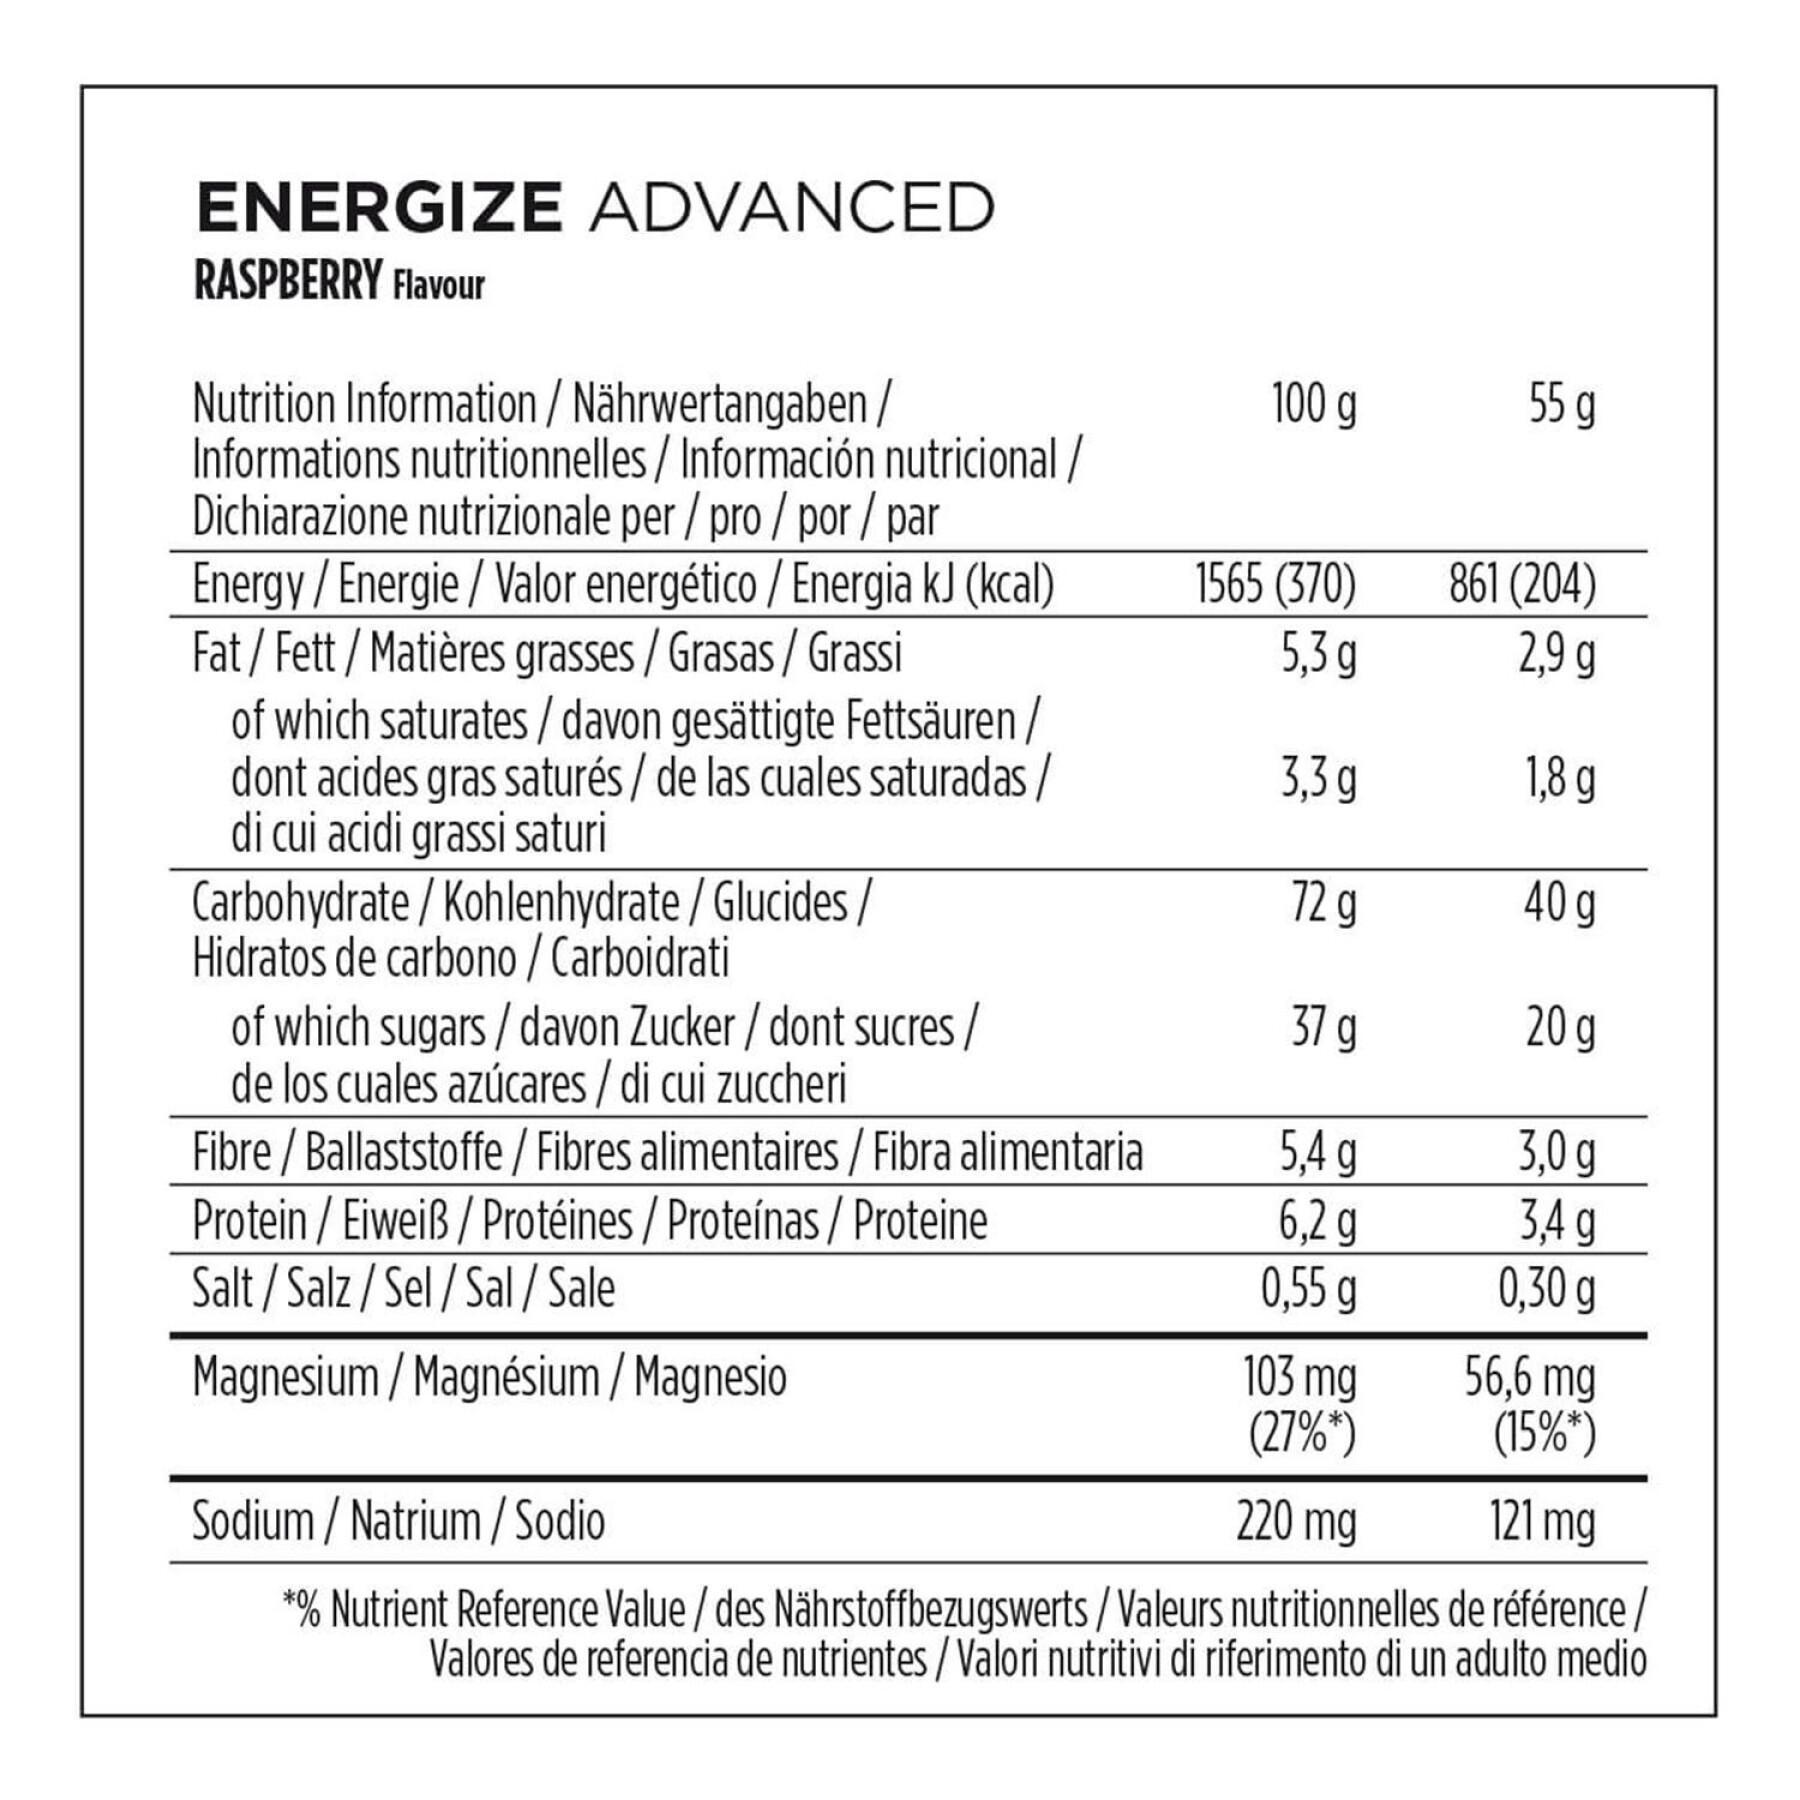 Packung mit 15 Ernährungsriegeln PowerBar Energize Advanced